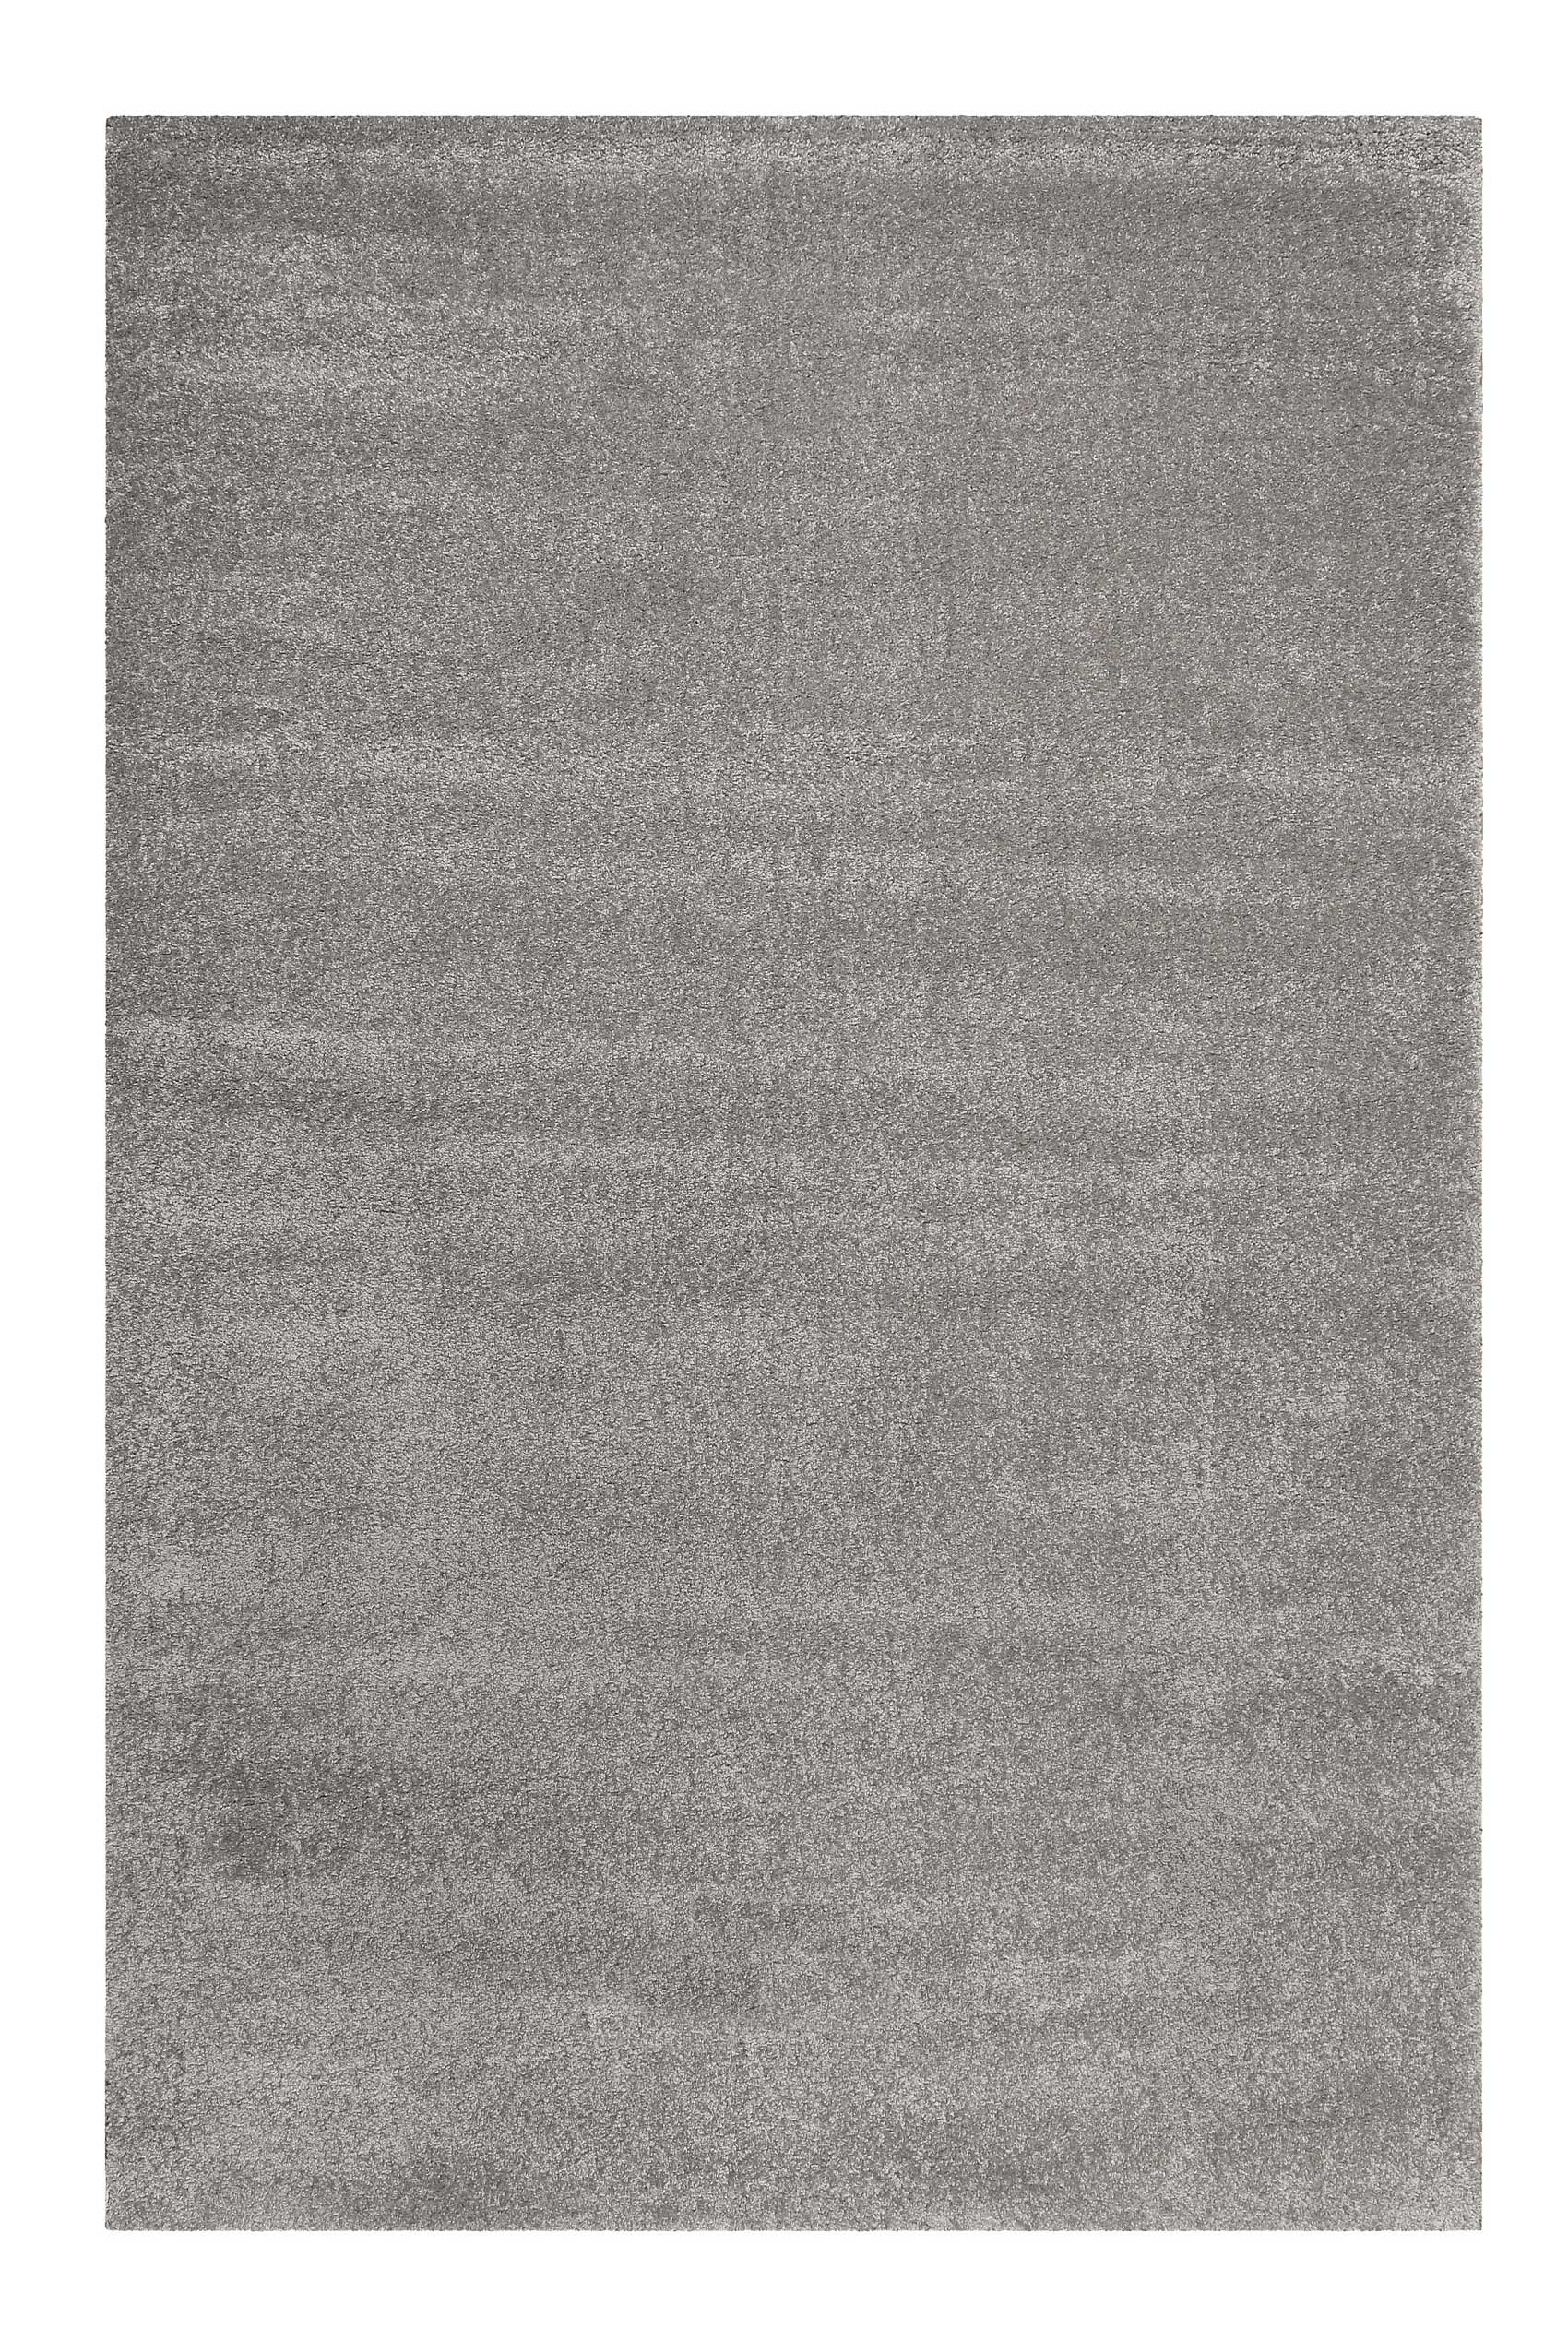 Esprit Teppich Grau Kurzflor » California « - Ansicht 1